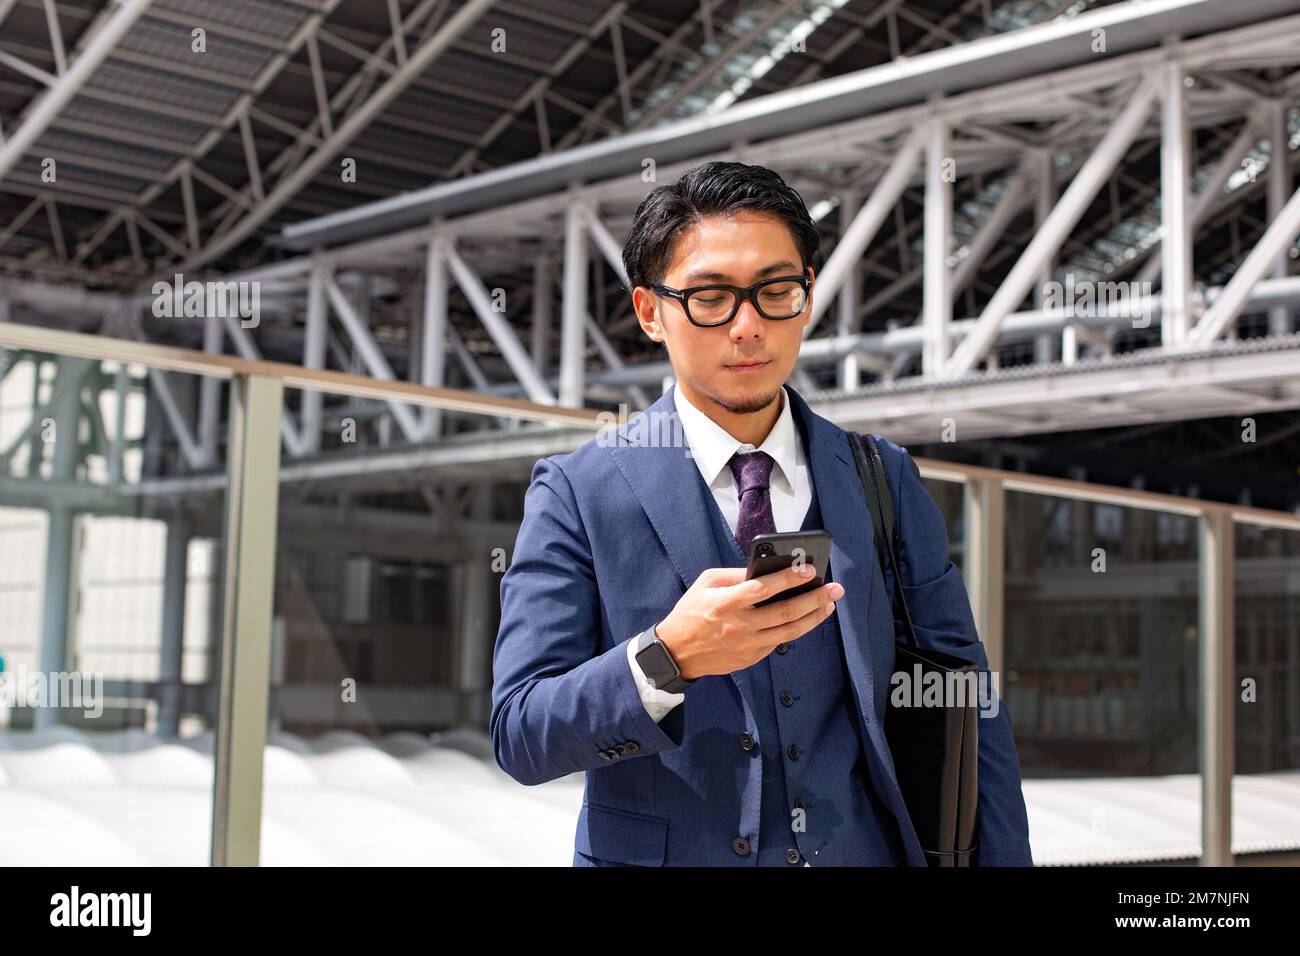 Un joven hombre de negocios en la ciudad, en movimiento, un hombre con un traje azul con una bolsa de ordenador portátil, sosteniendo un teléfono móvil. Foto de stock